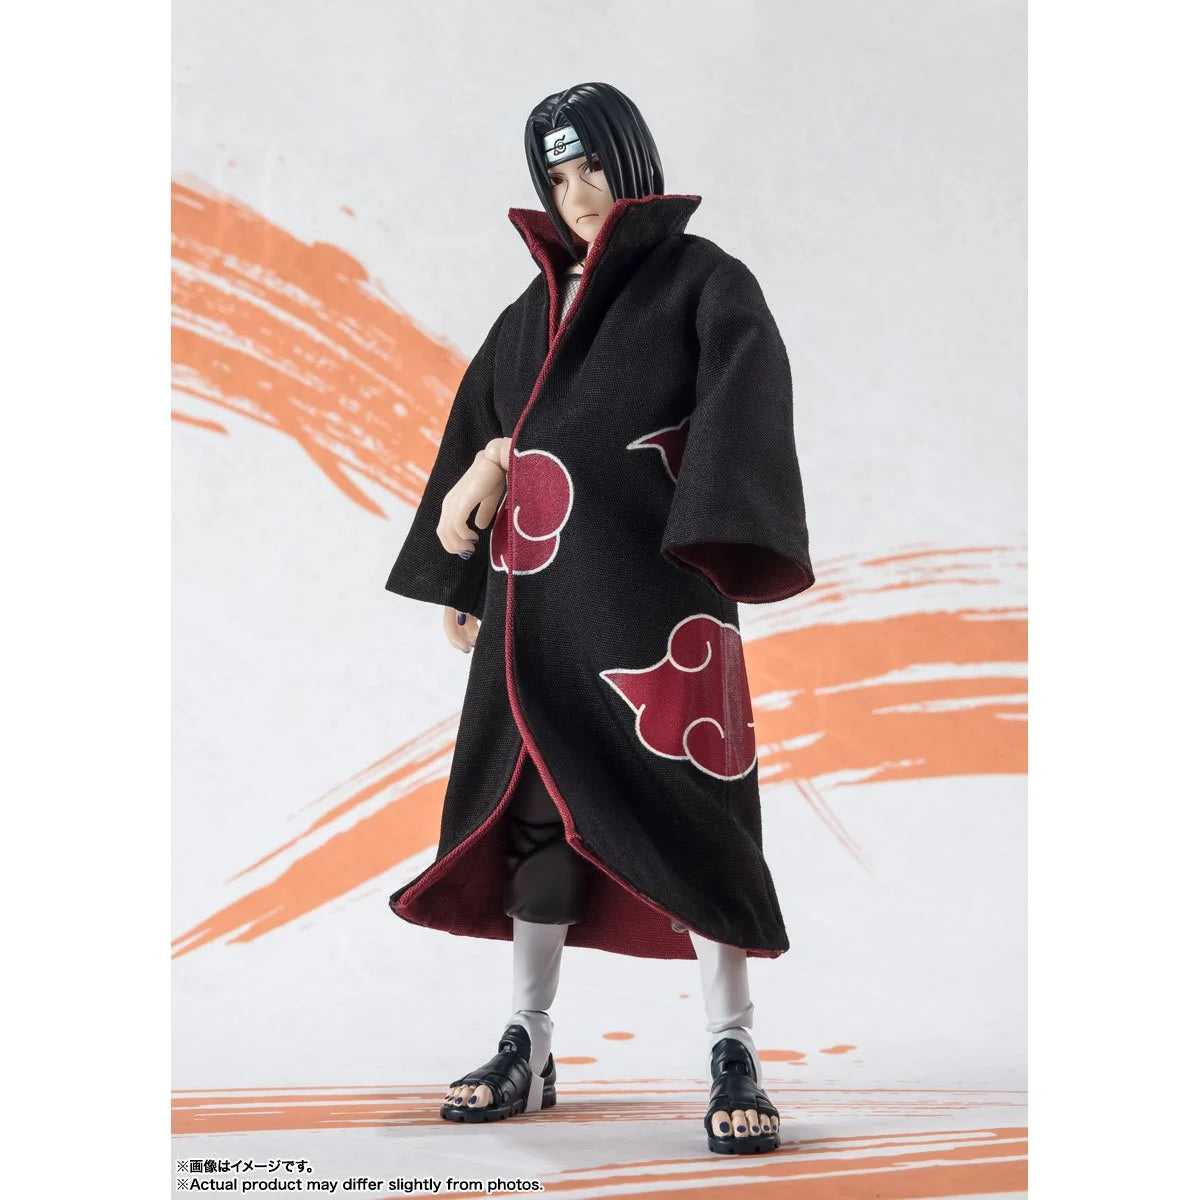 Bandai Tamashii Nations SH Figuarts: Naruto Shippuden - Itachi Uchiha Edicion Narutop99 Figura de Accion